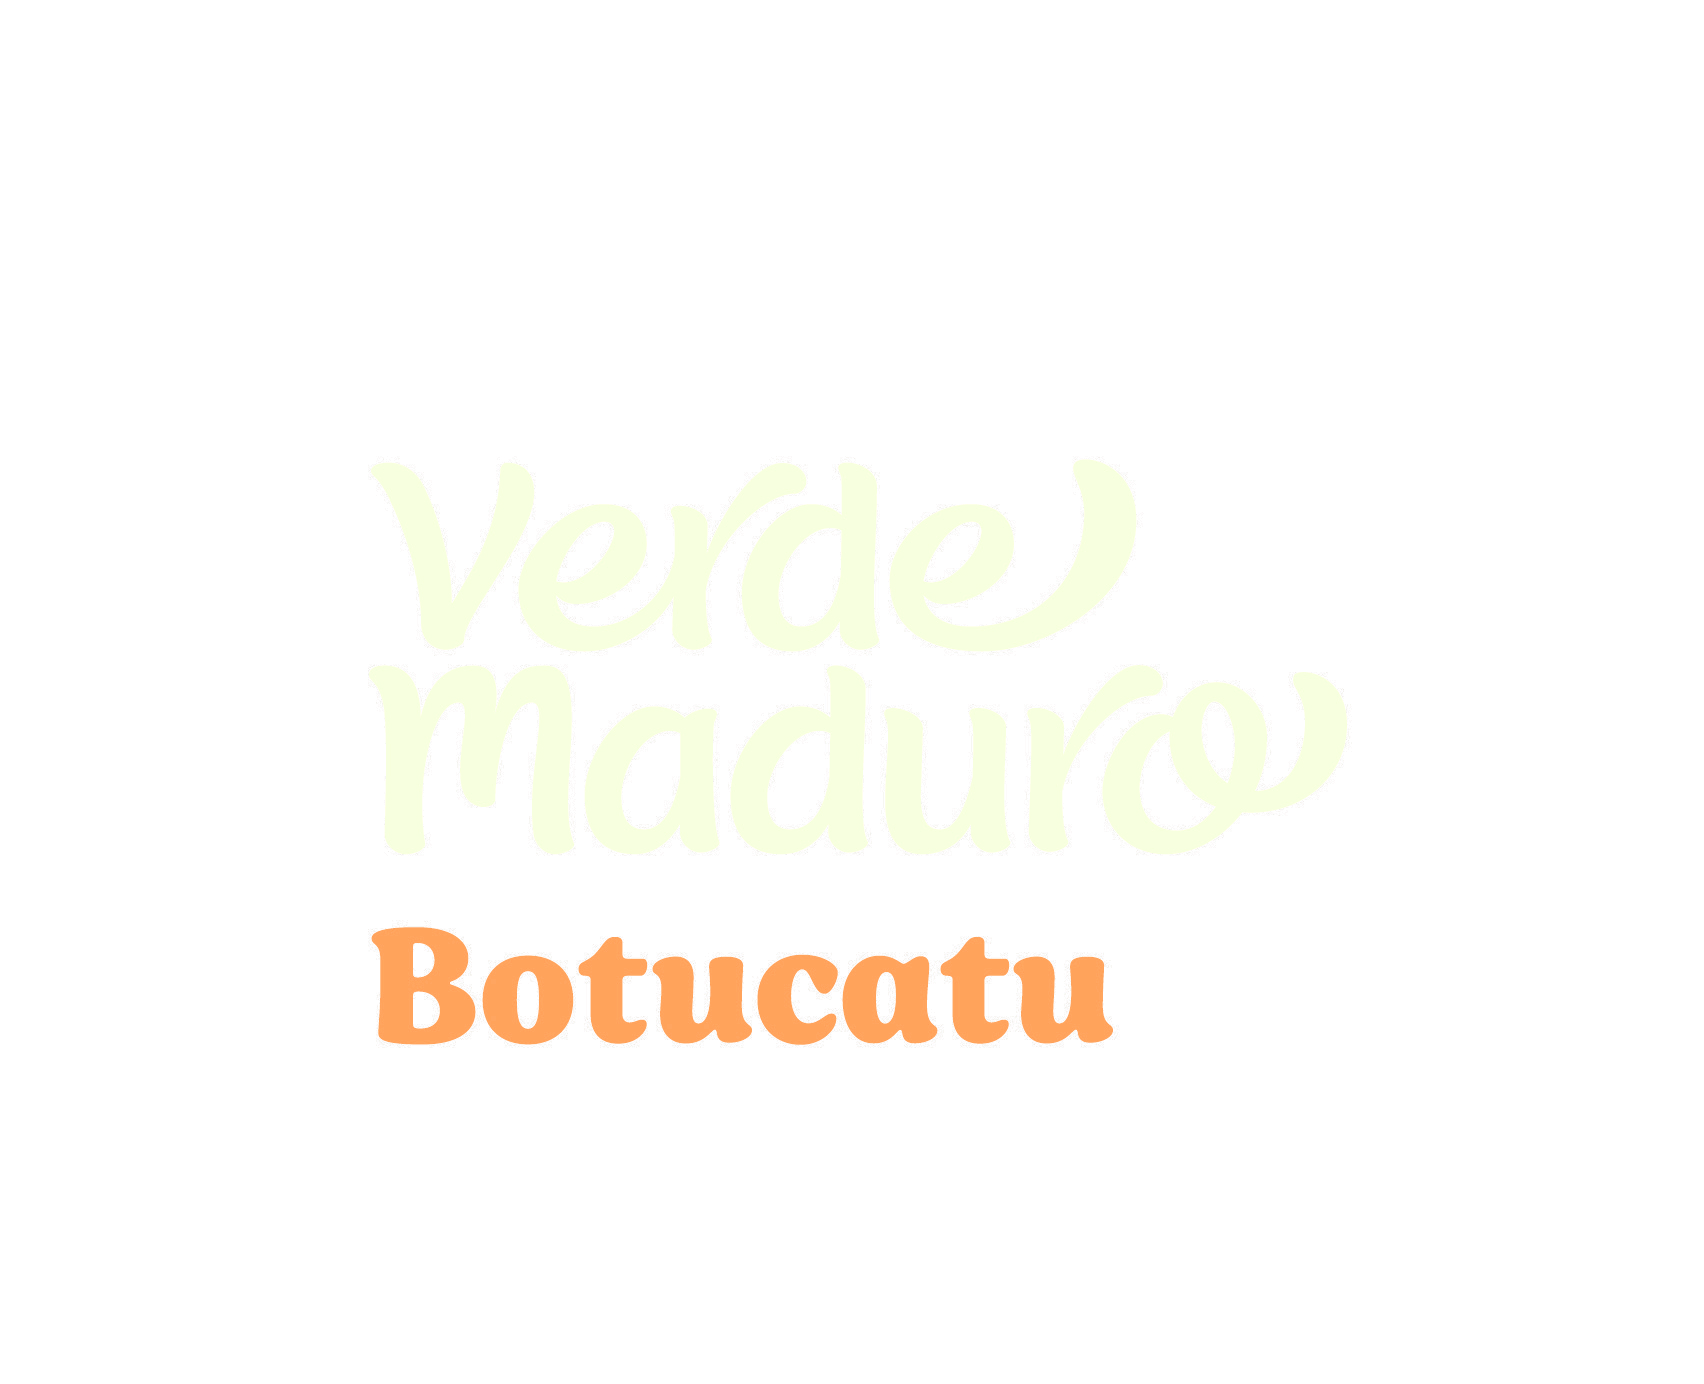 VERDE MADURO BOTUCATU